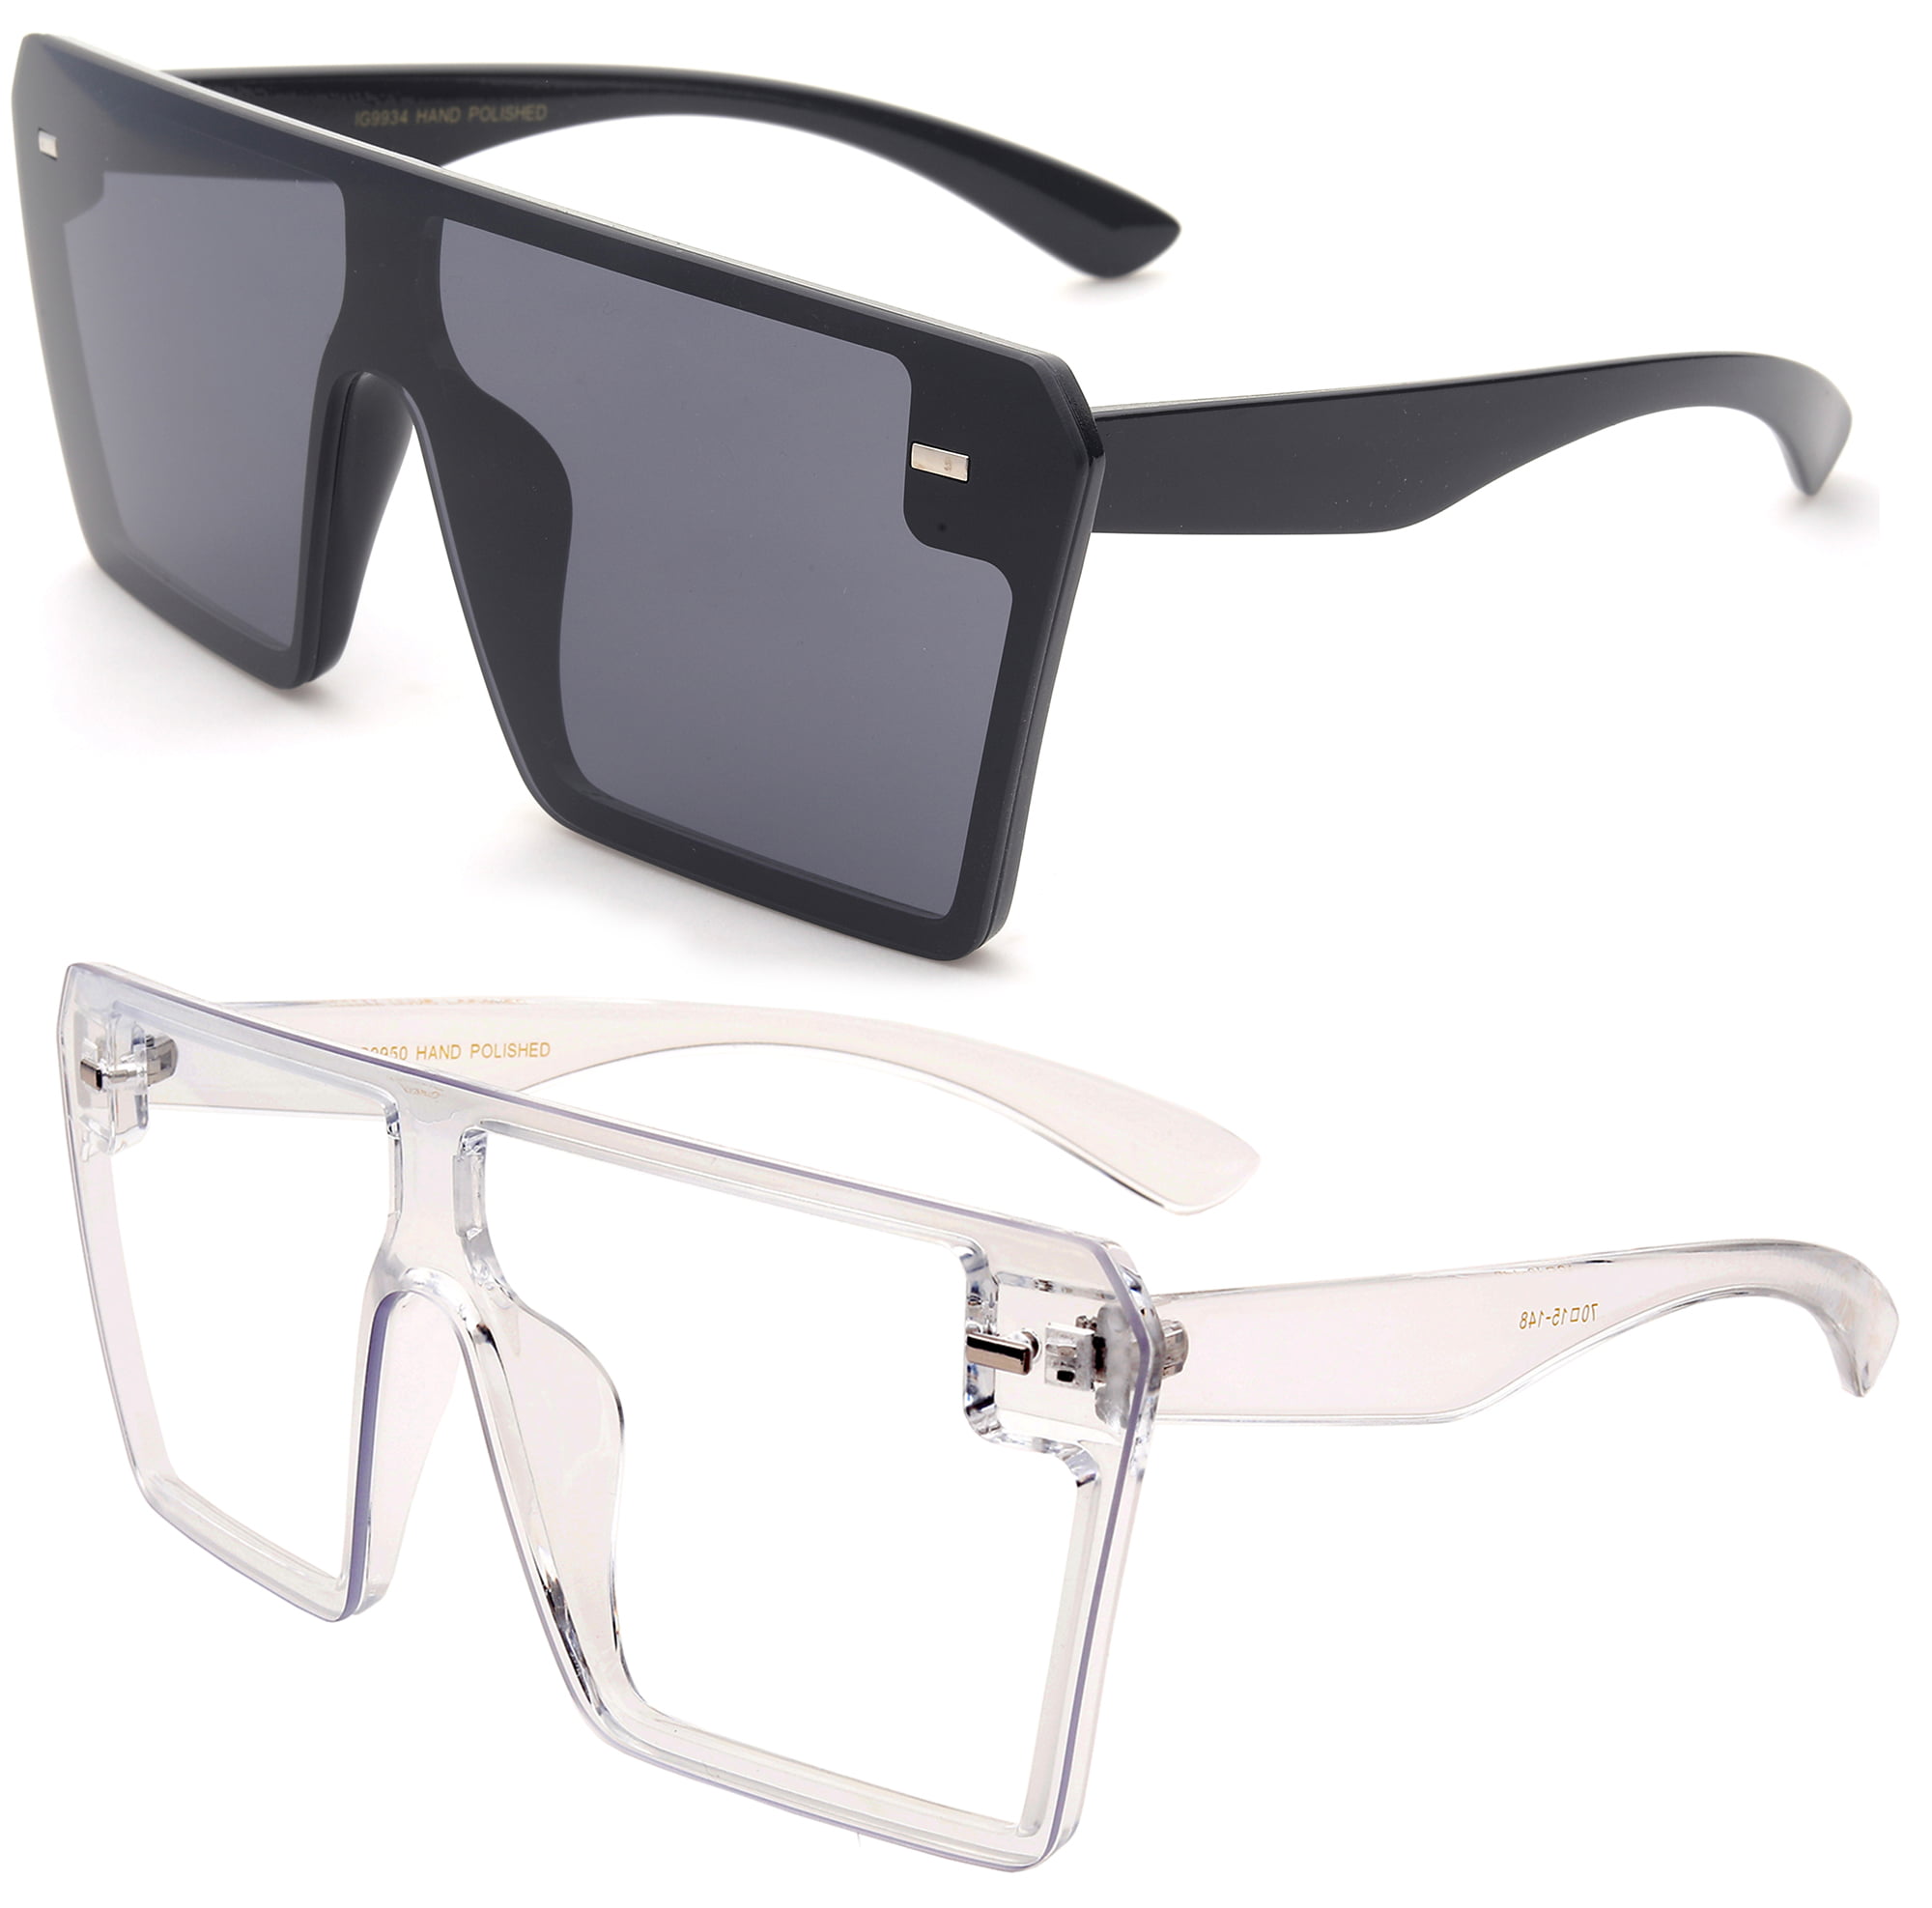 1 2 or 3 Pair Retro Square Frame Sunglasses Men Women Flat Top Suepr Dark UV400 